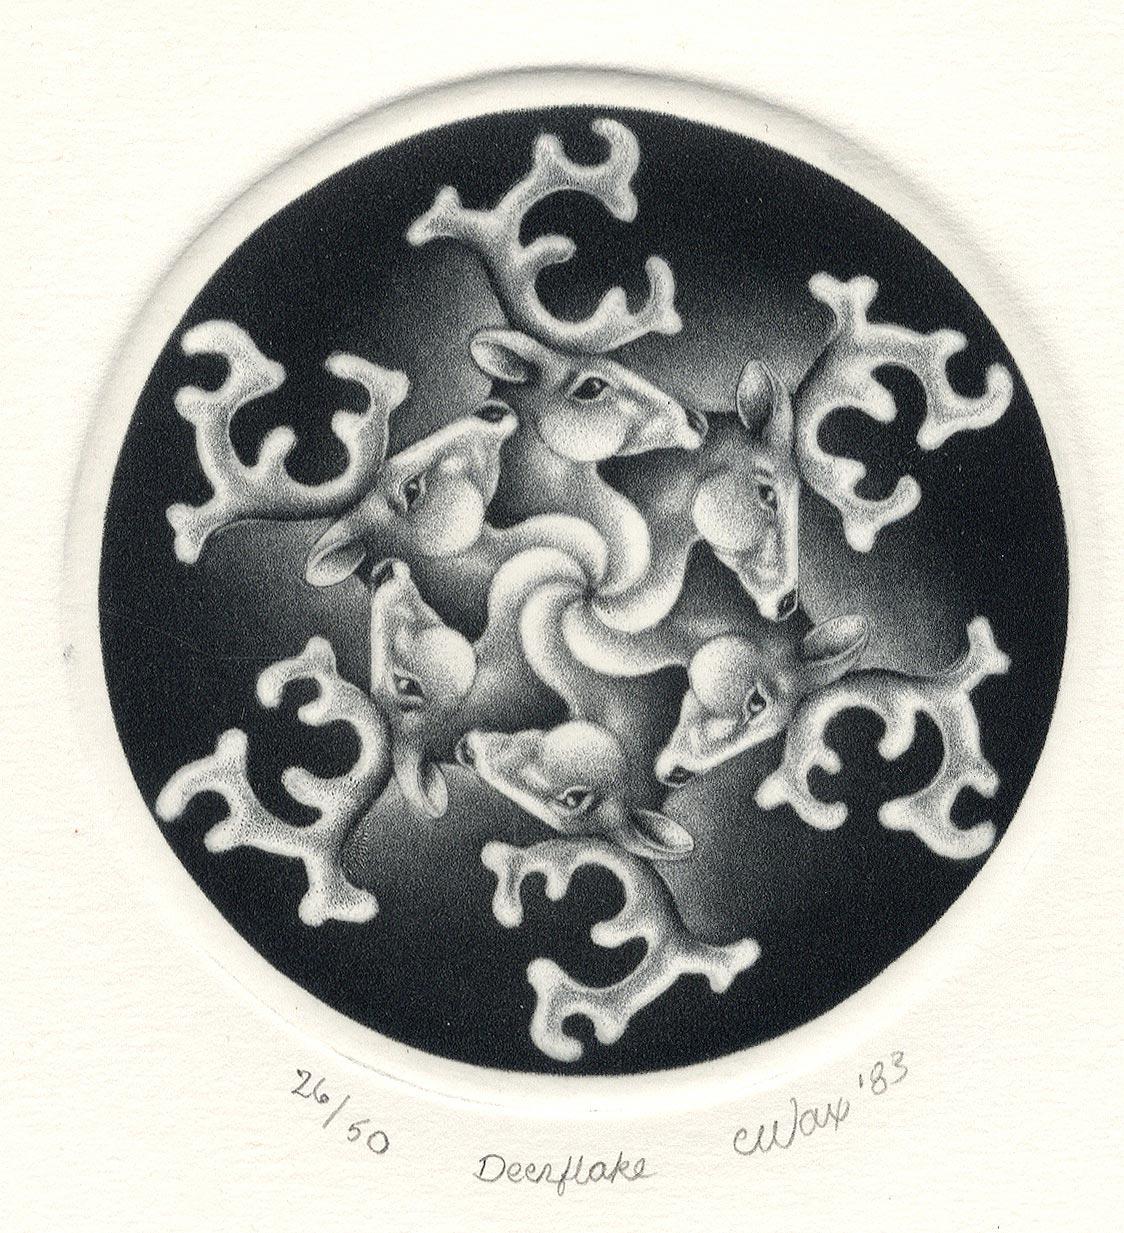 Carol Wax Abstract Print – Deerflake (Das erste Werk des Künstlers, das den Solstice / den Hirsch als Schneeflocke feiert)